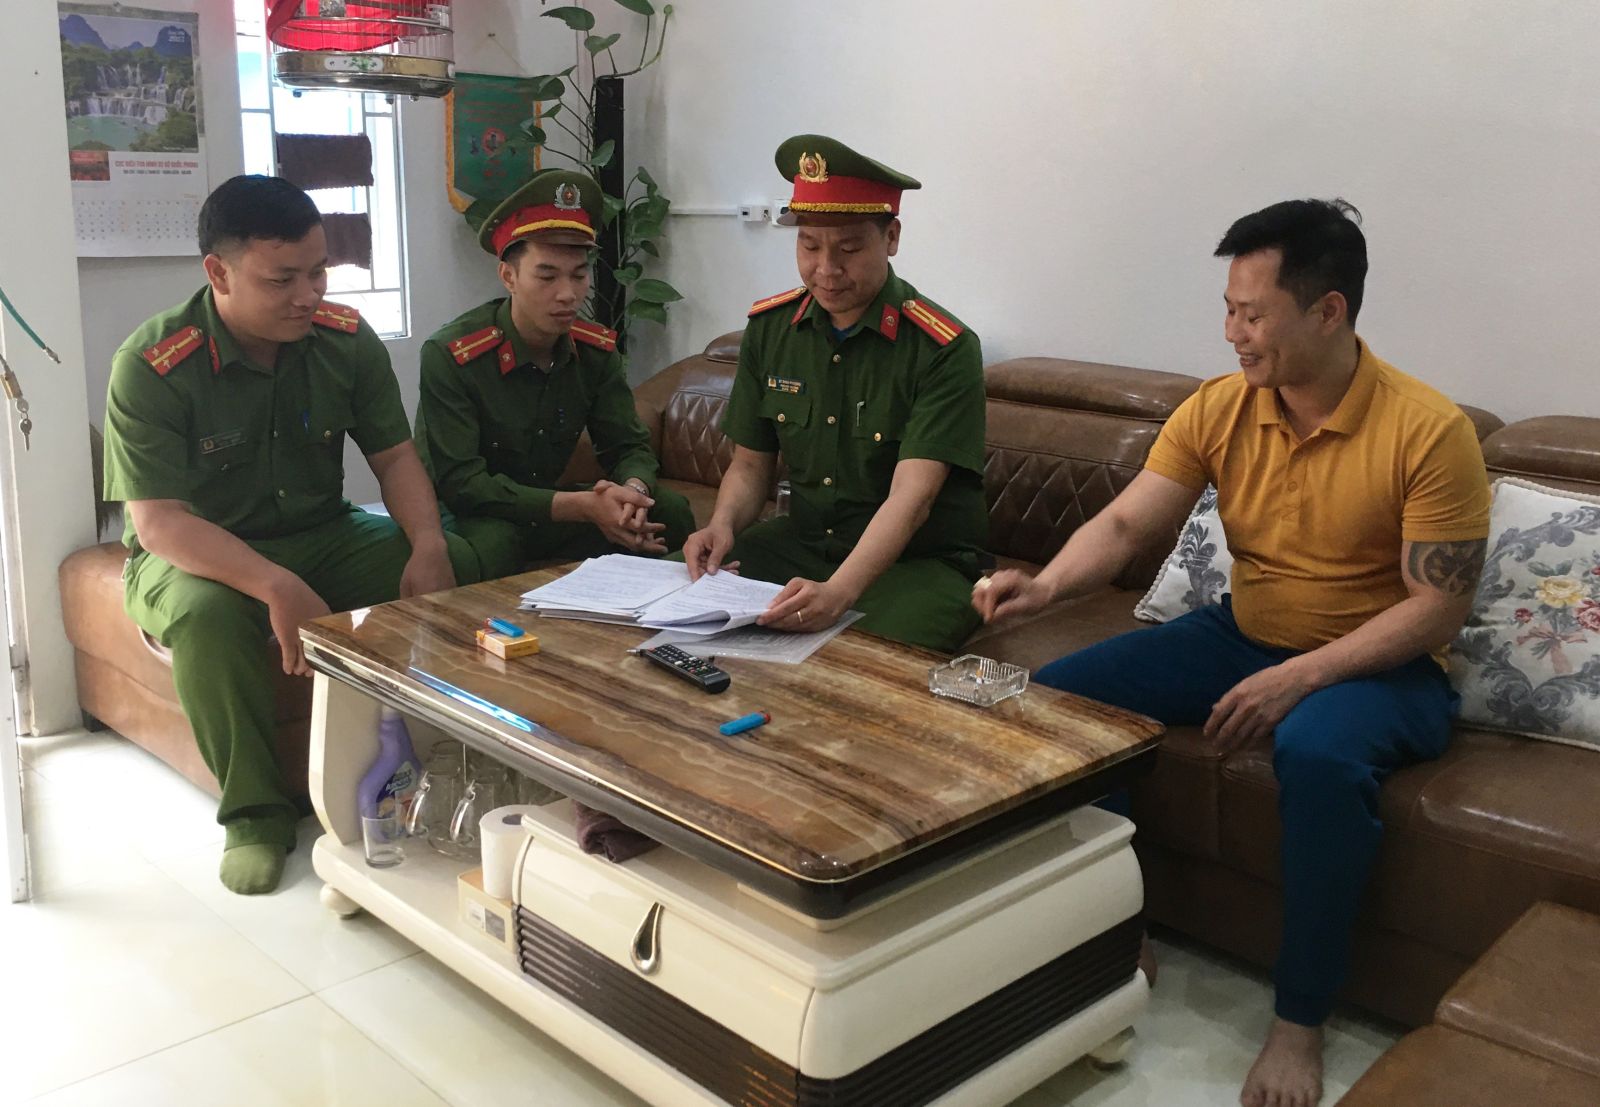 33/52 cơ sở kinh doanh cầm đồ trên địa bàn Thị xã Nghi Sơn có dấu hiệu vi phạm - Ảnh 1.